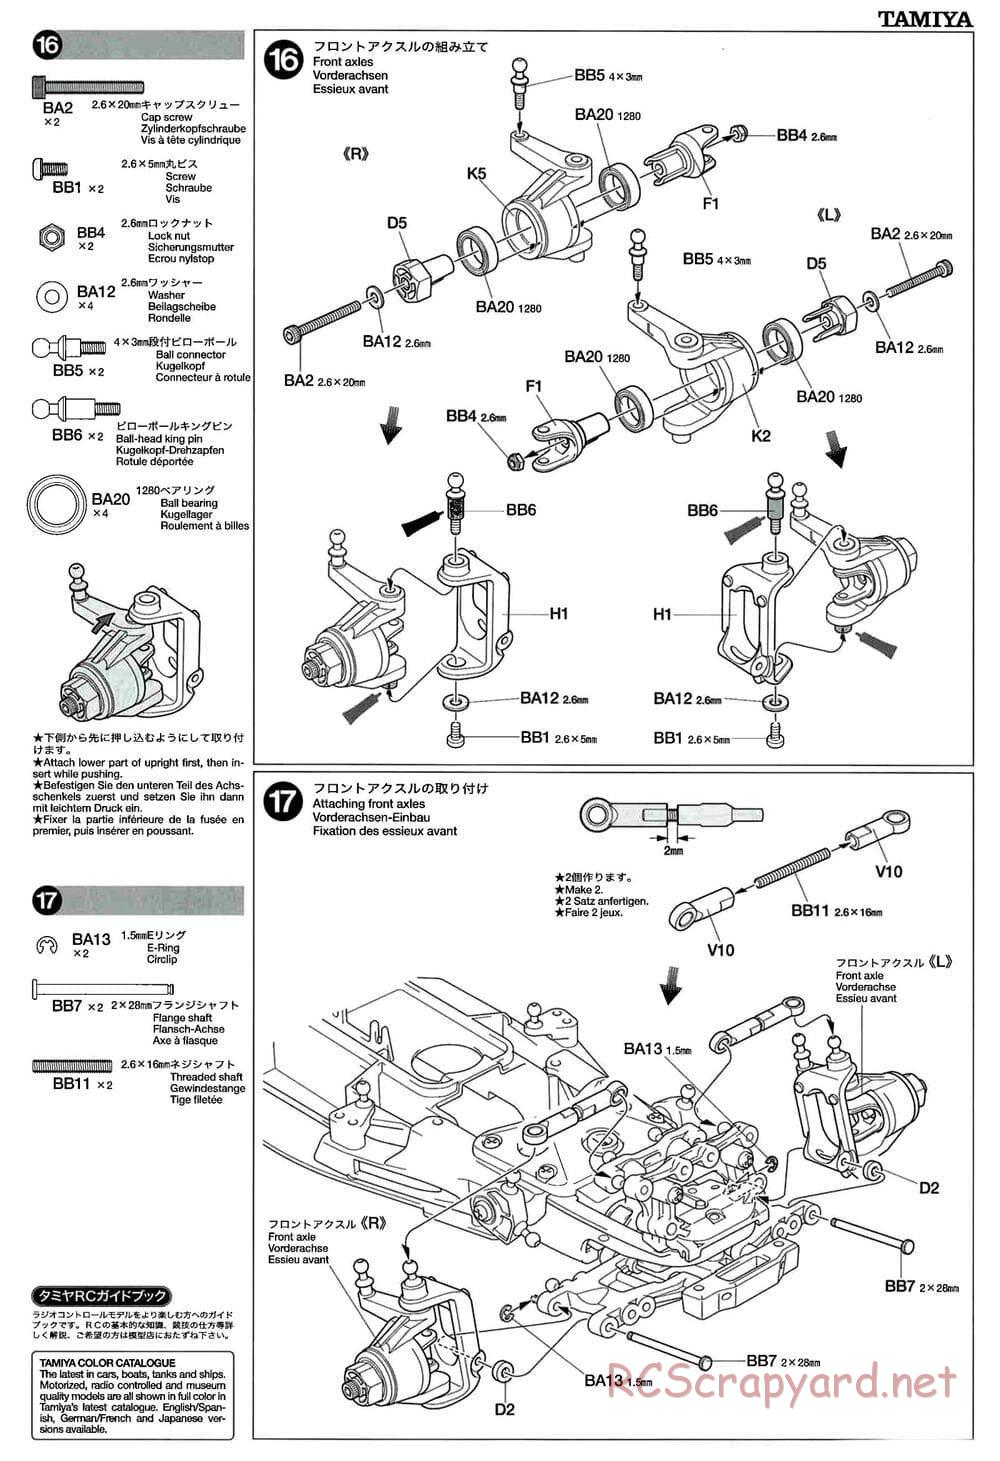 Tamiya - GT-01 Chassis - Manual - Page 11